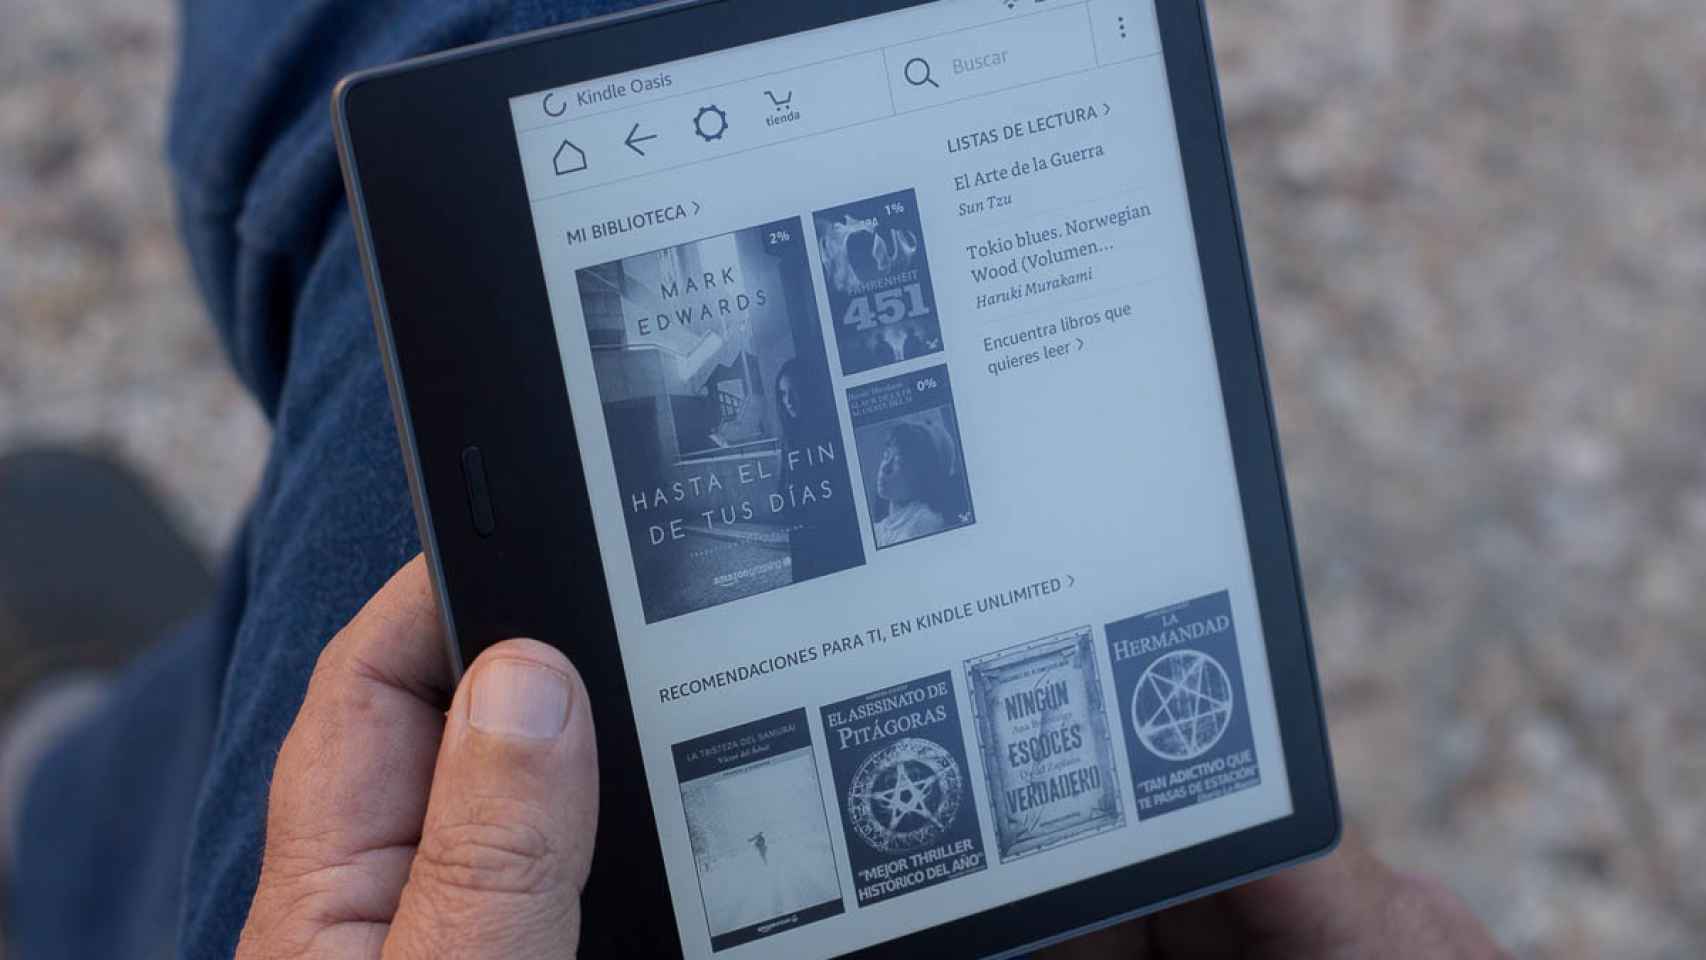 Llega el Kindle Oasis, el nuevo libro electrónico de